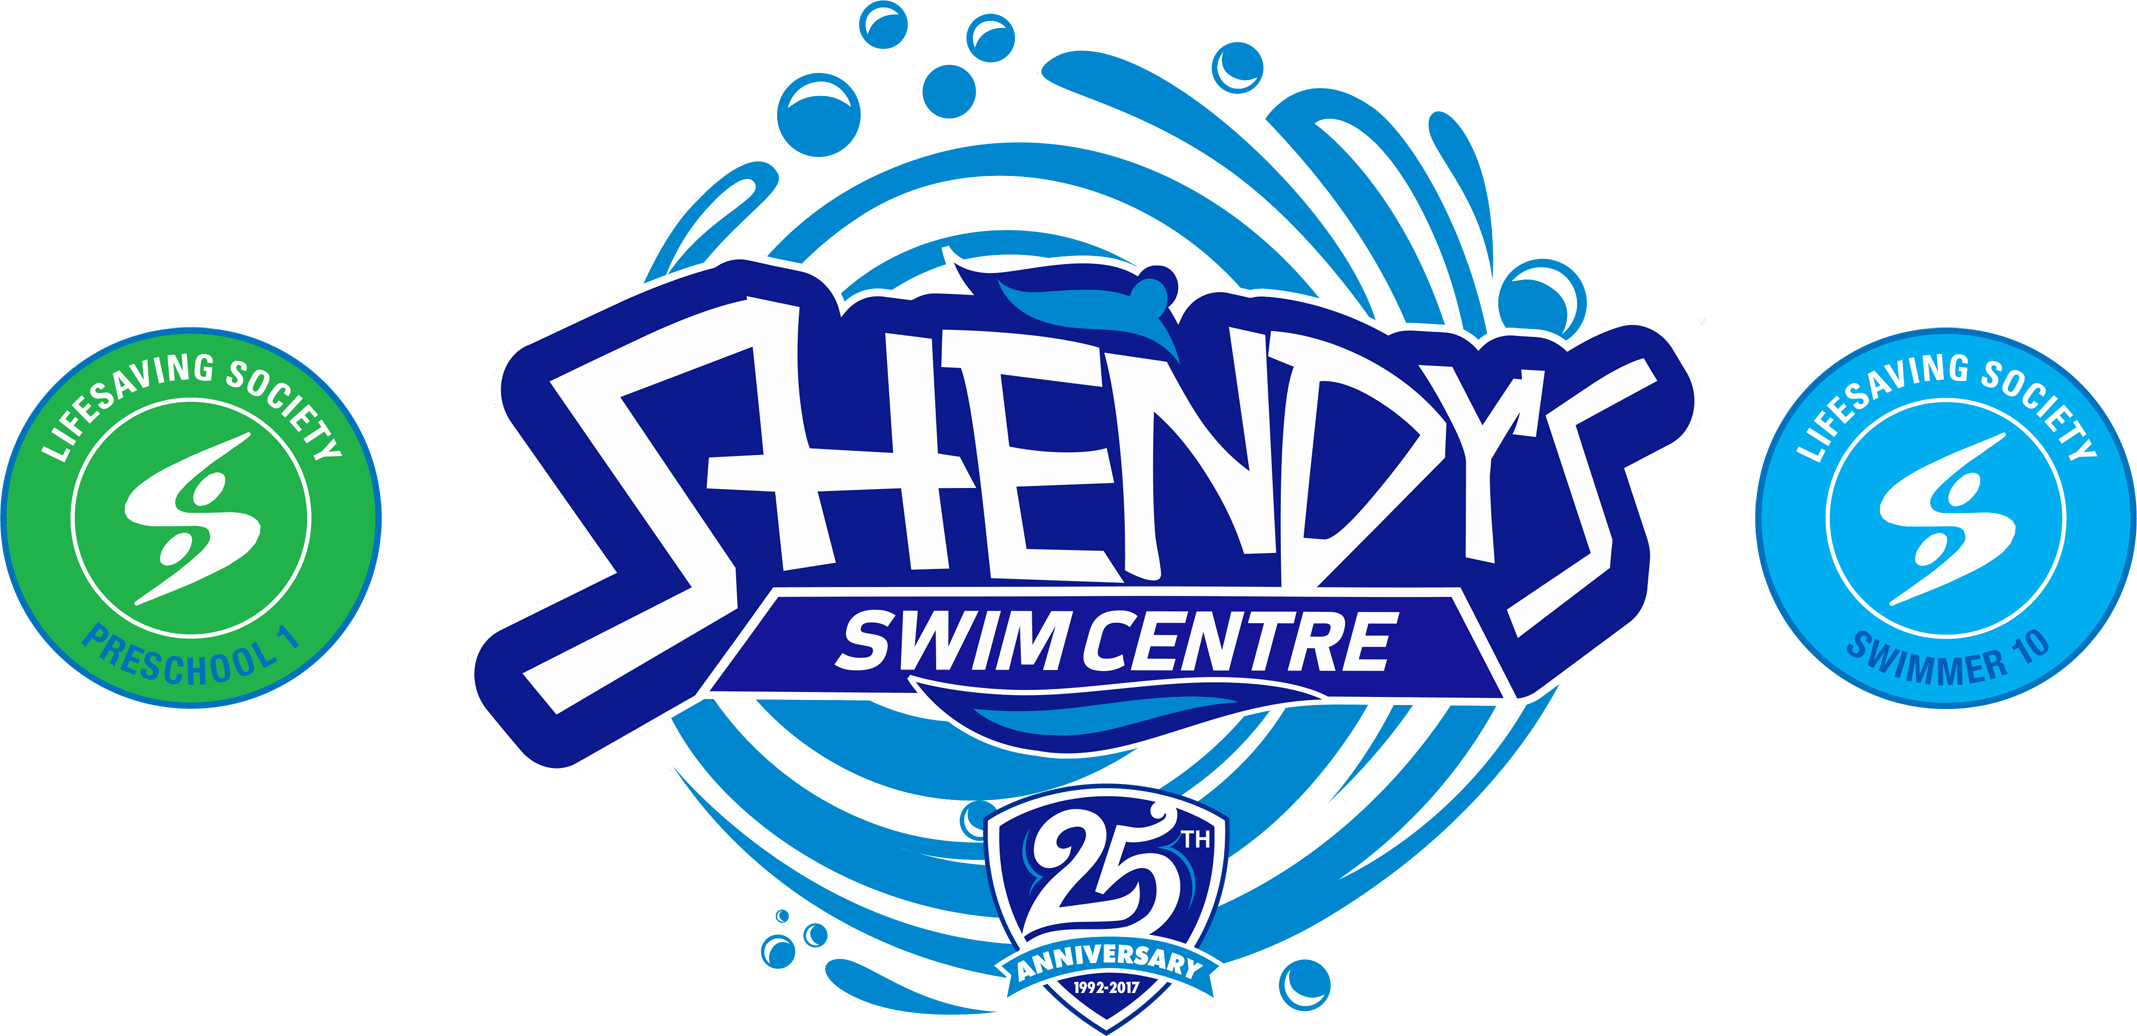 Shendy's Swim Program